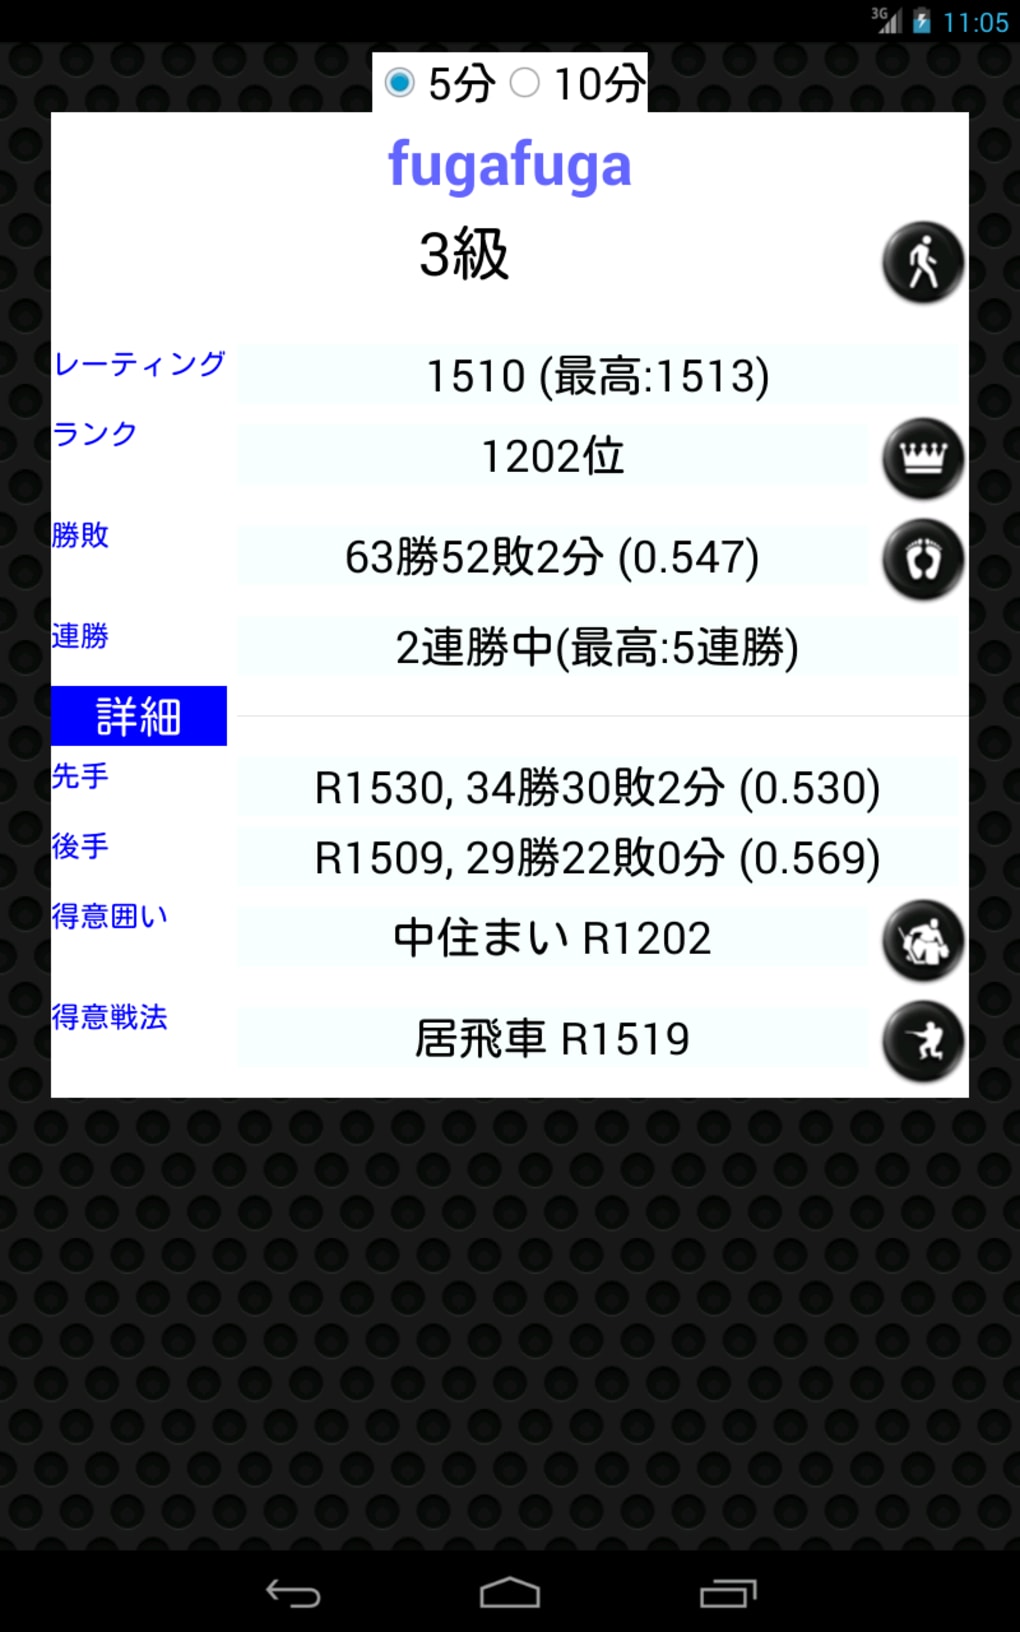 Shogi Quest 1.9.63 Free Download